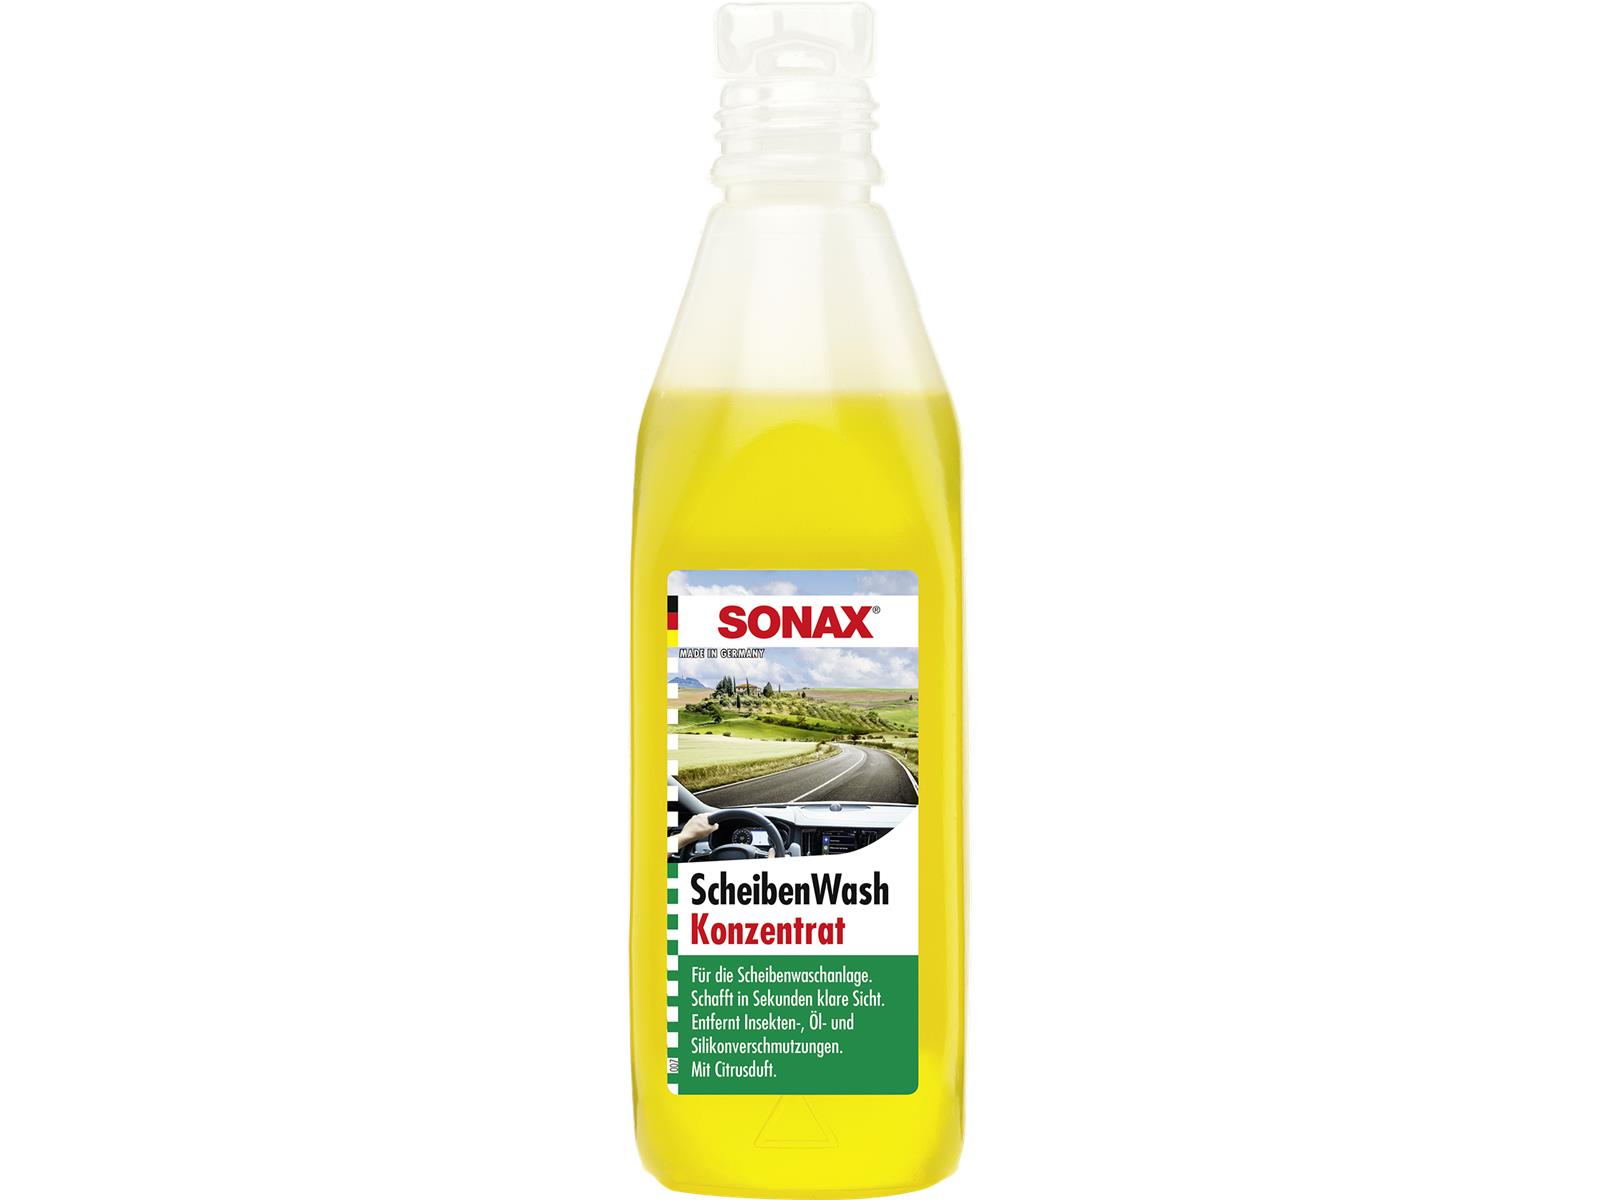 SONAX 02602000 ScheibenWash Konzentrat mit Citrusduft 250 ml